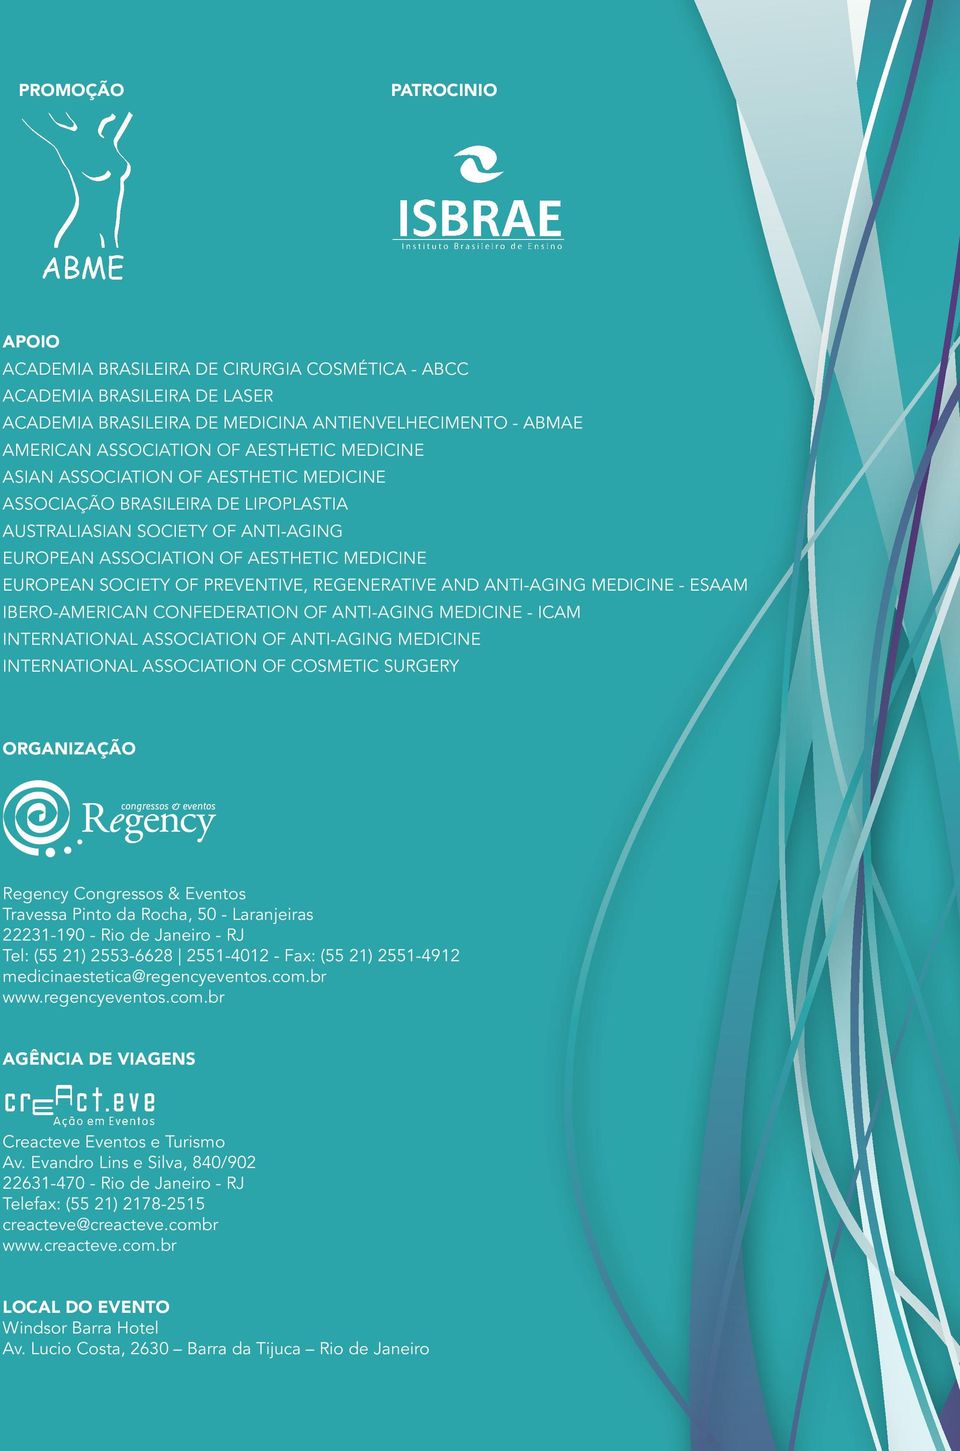 REGENERATIVE AND ANTI-AGING MEDICINE - ESAAM IBERO-AMERICAN CONFEDERATION OF ANTI-AGING MEDICINE - ICAM INTERNATIONAL ASSOCIATION OF ANTI-AGING MEDICINE INTERNATIONAL ASSOCIATION OF COSMETIC SURGERY